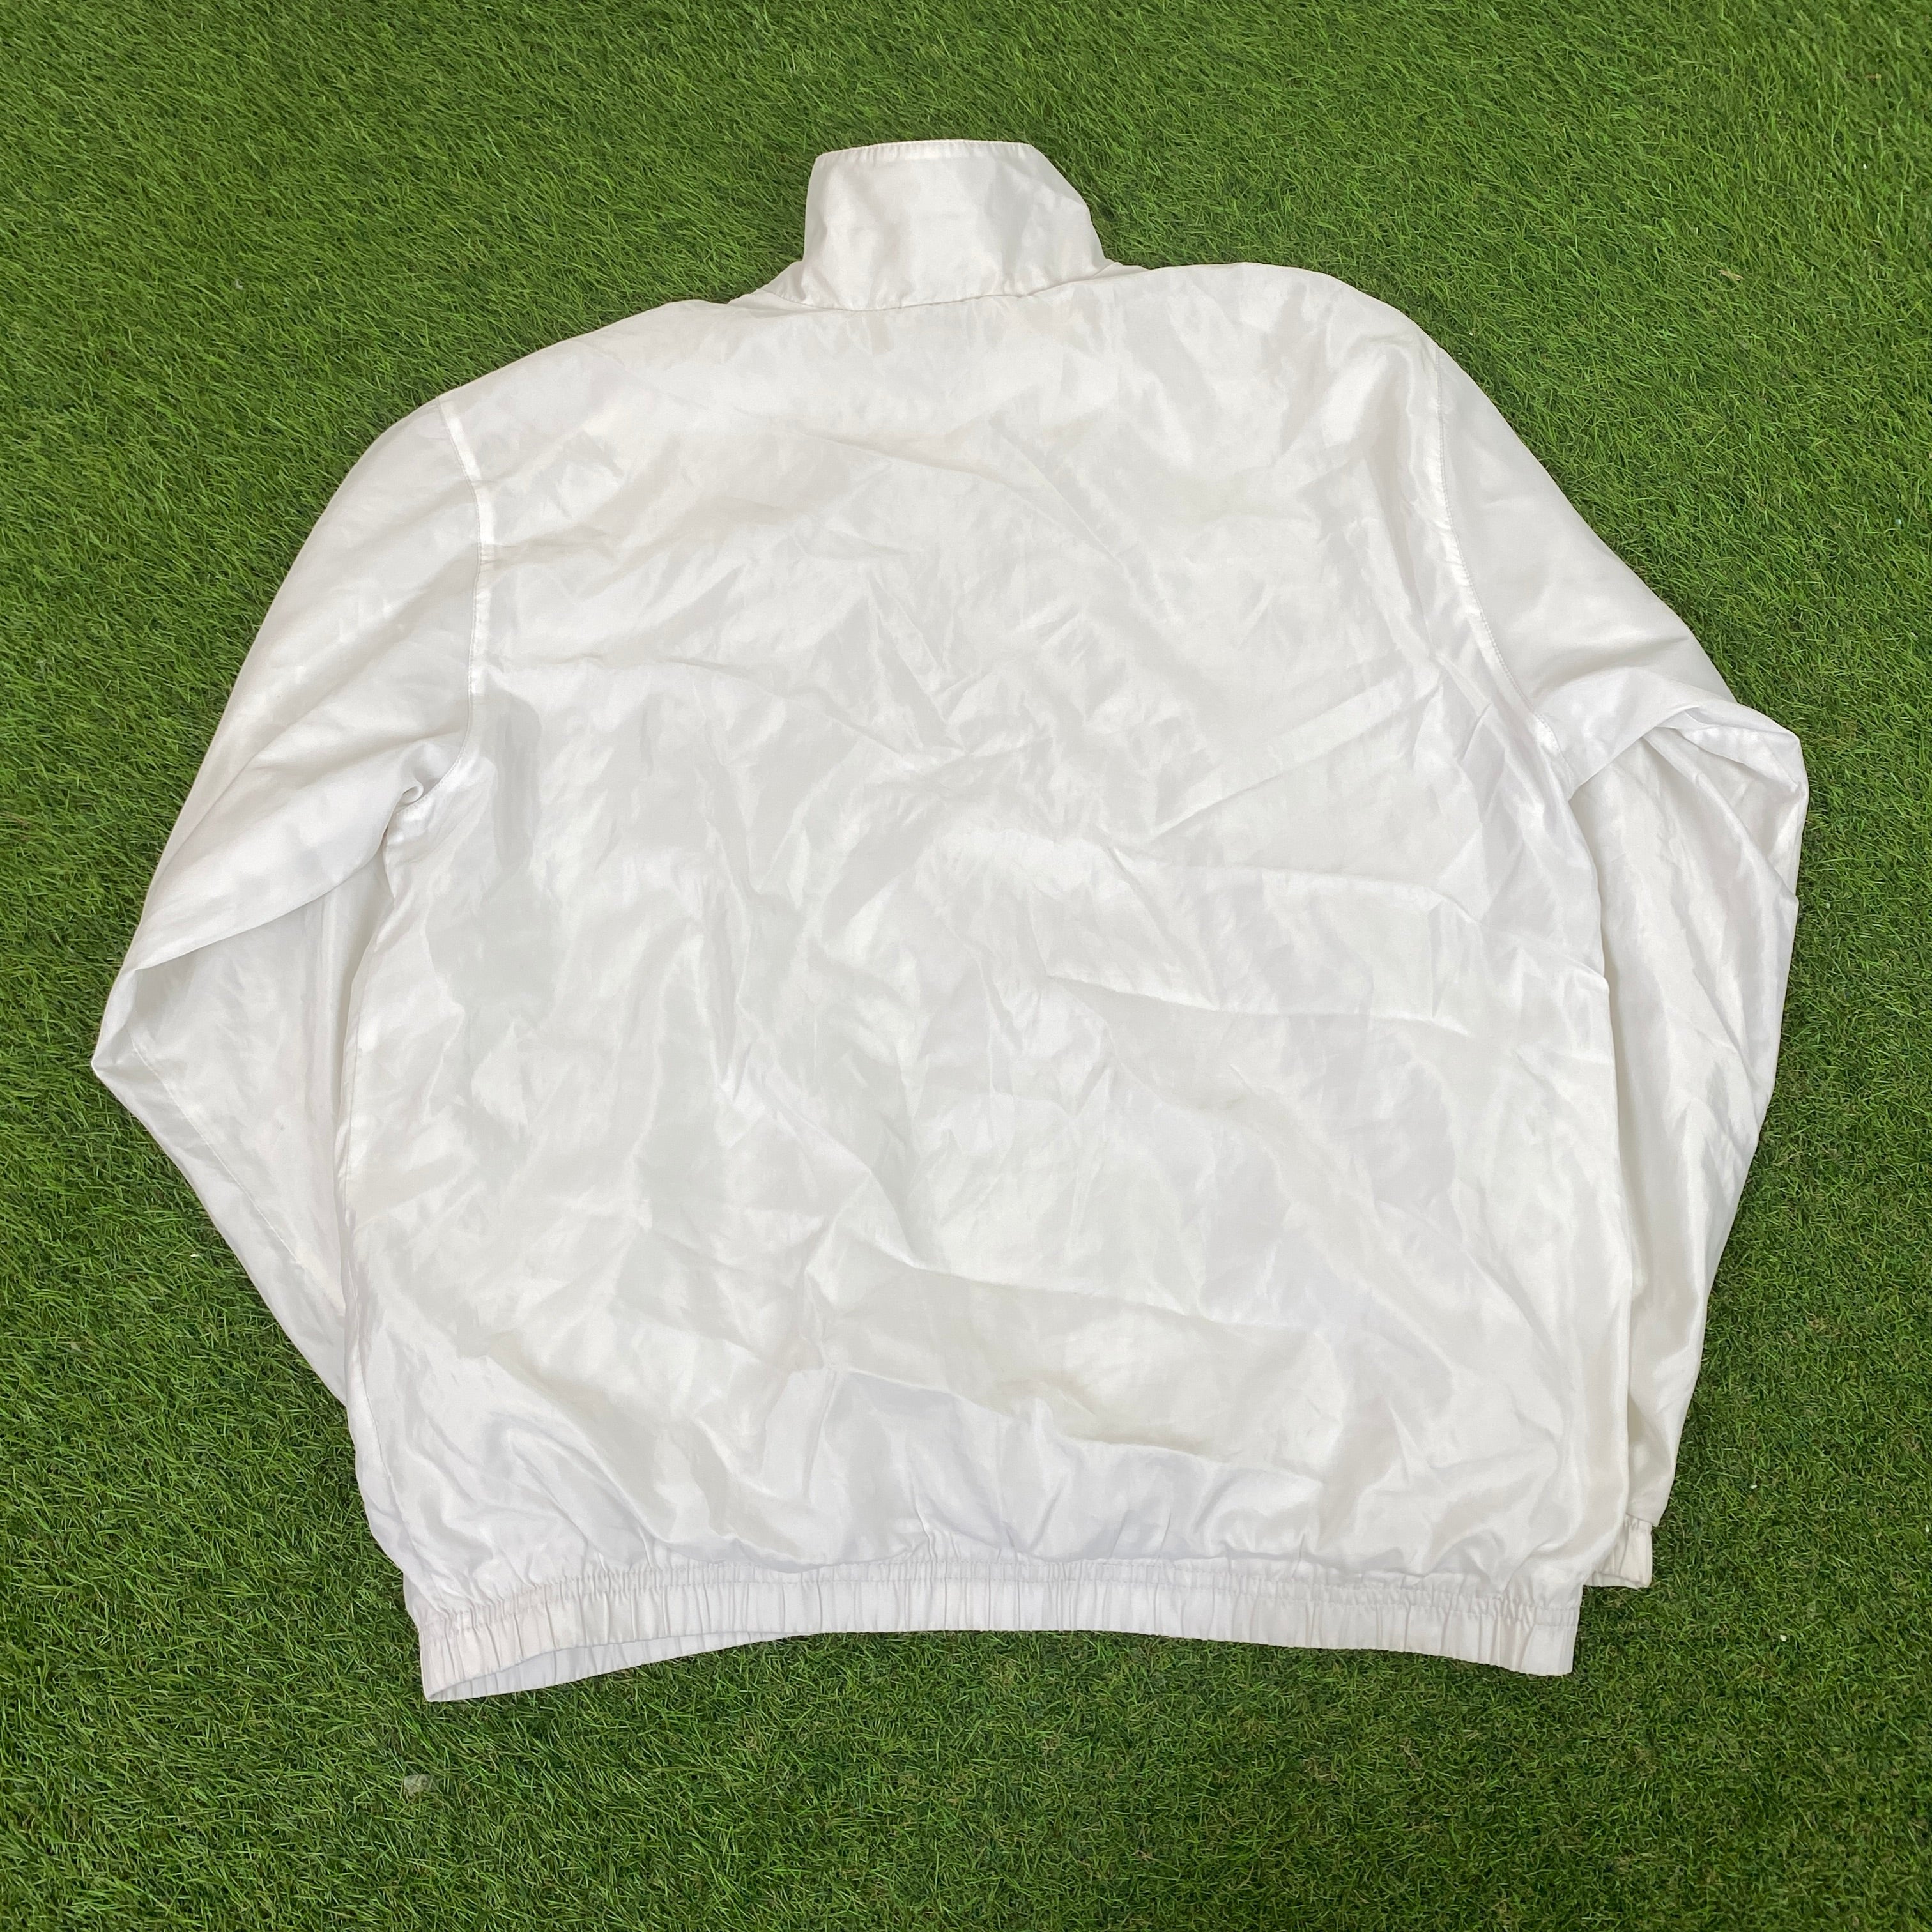 90s Nike Piping Jacket + Joggers Set White Medium